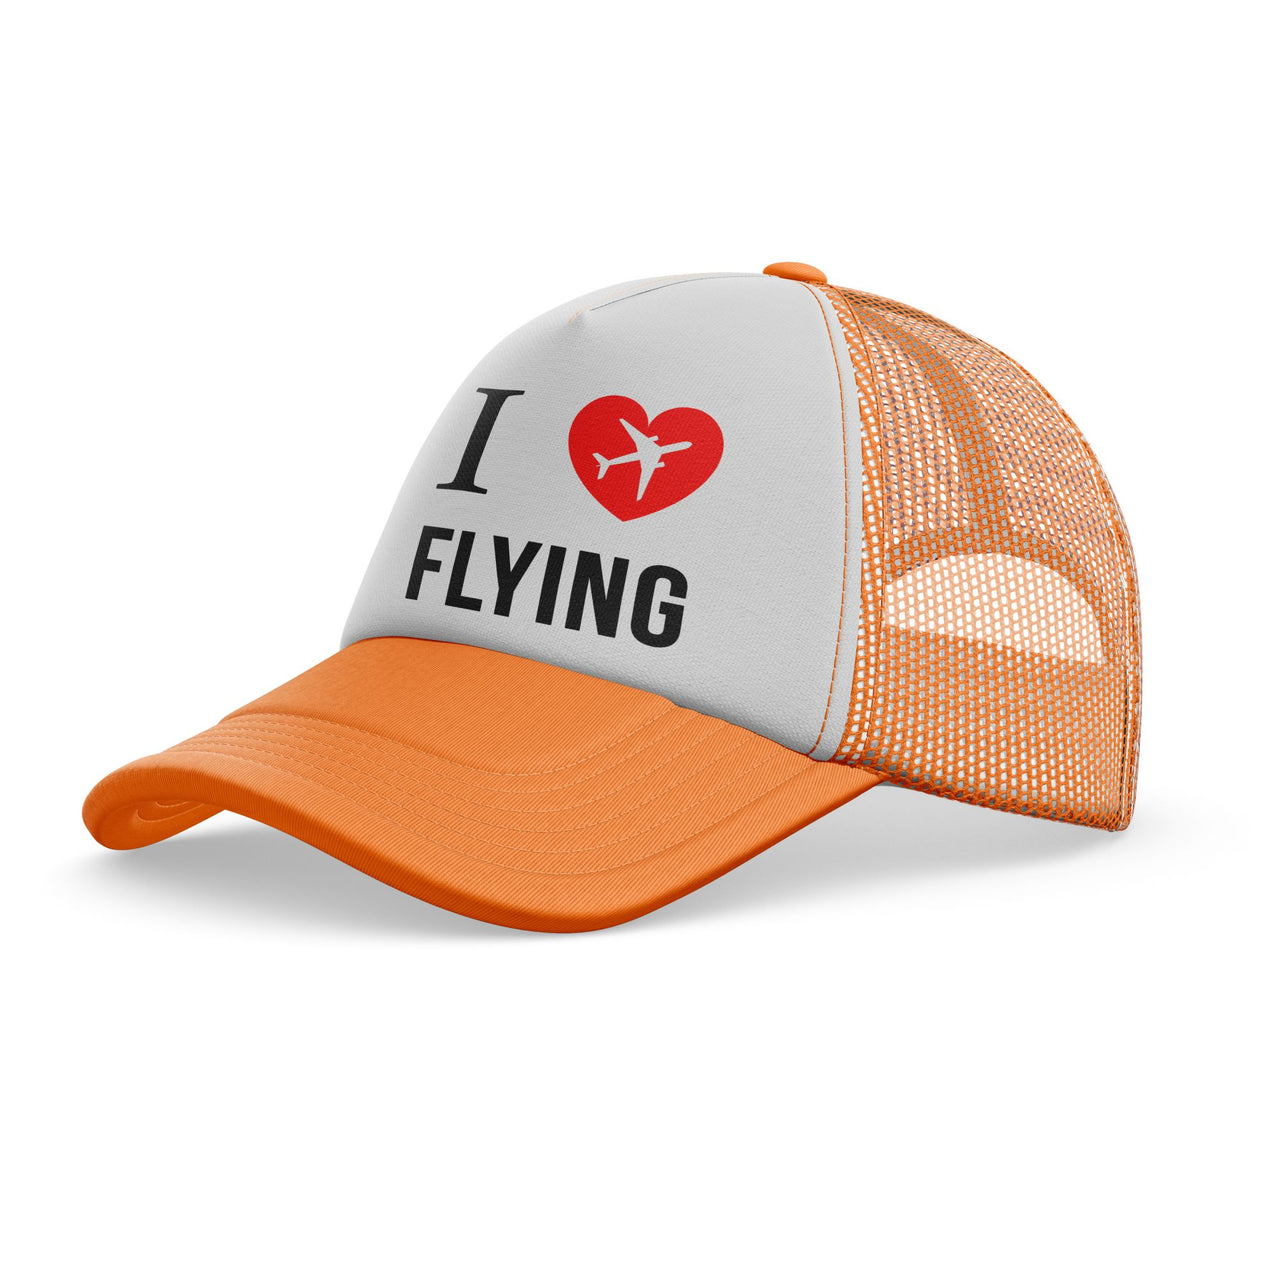 I Love Flying Designed Trucker Caps & Hats